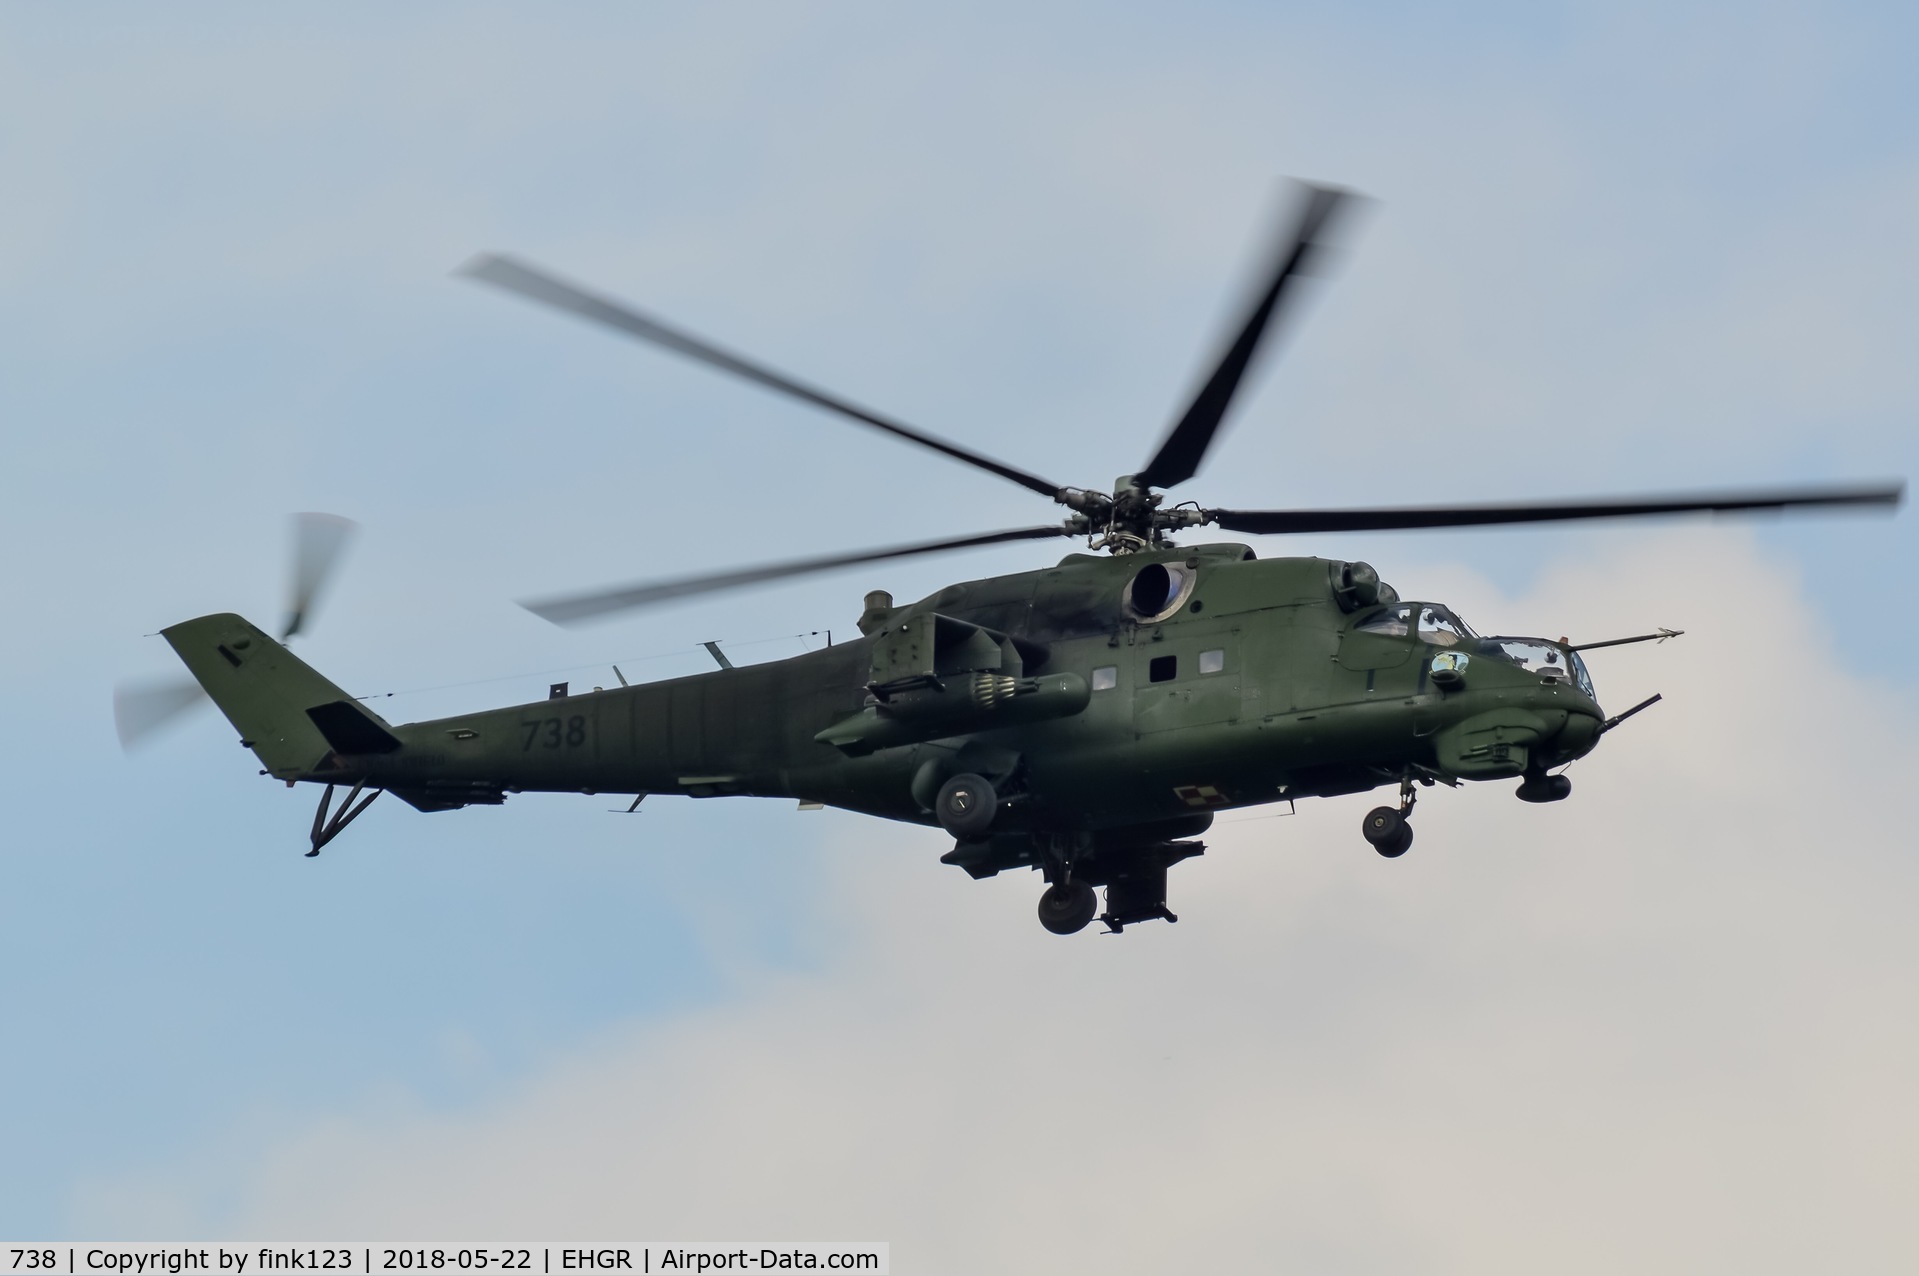 738, 1986 Mil Mi-24V Hind E C/N 410738, mi-24